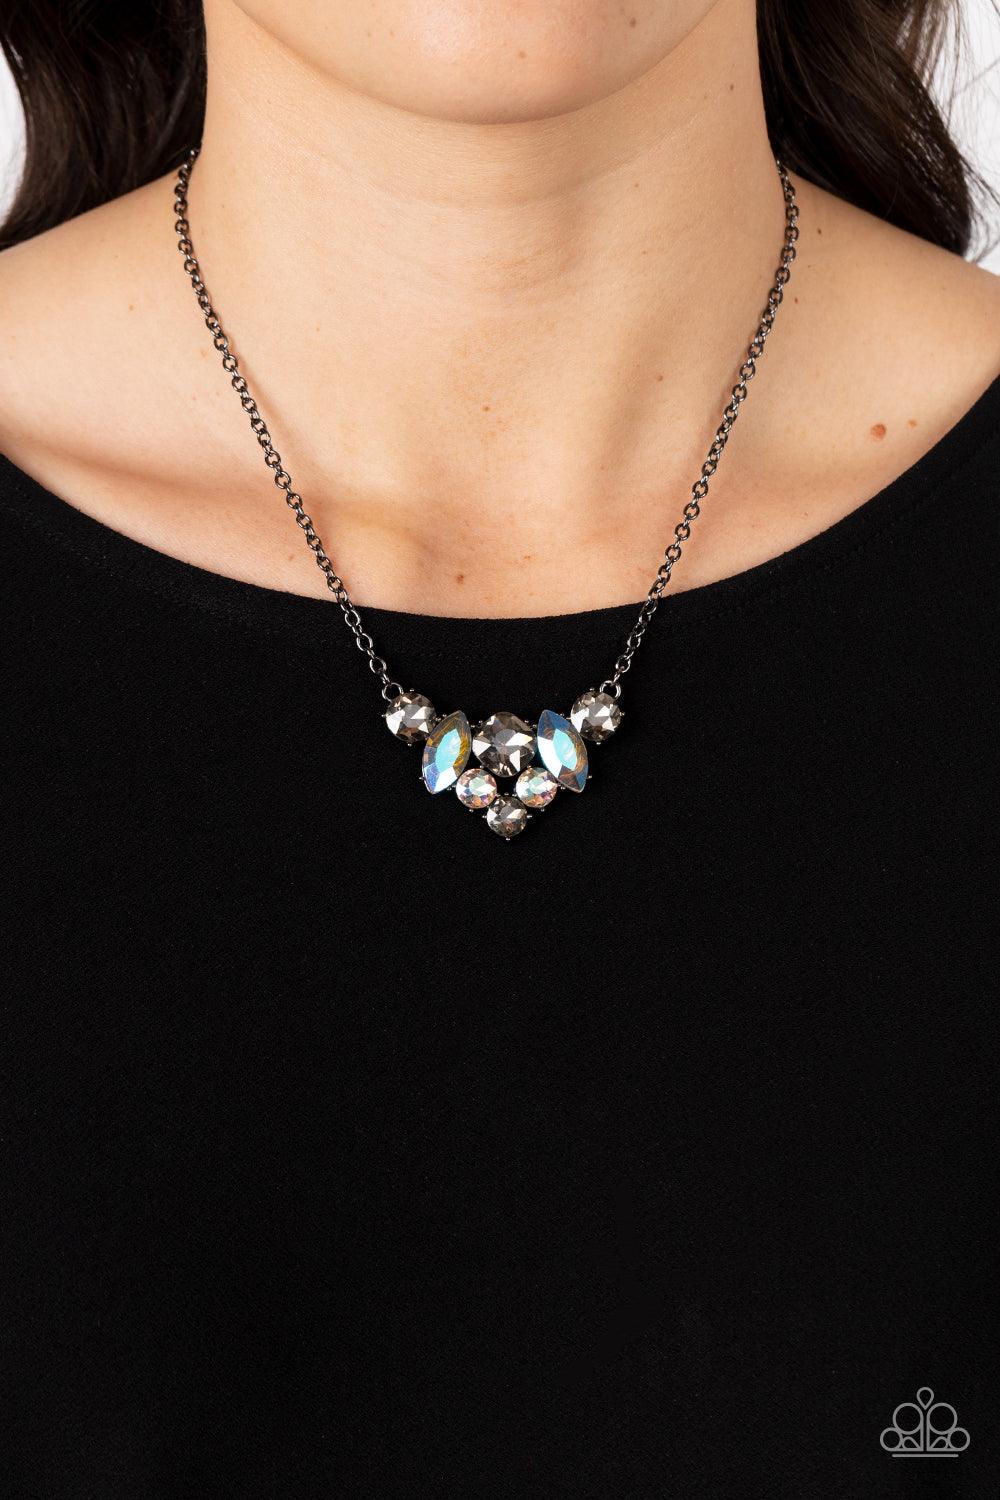 Lavishly Loaded Black Necklace - Jewelry by Bretta